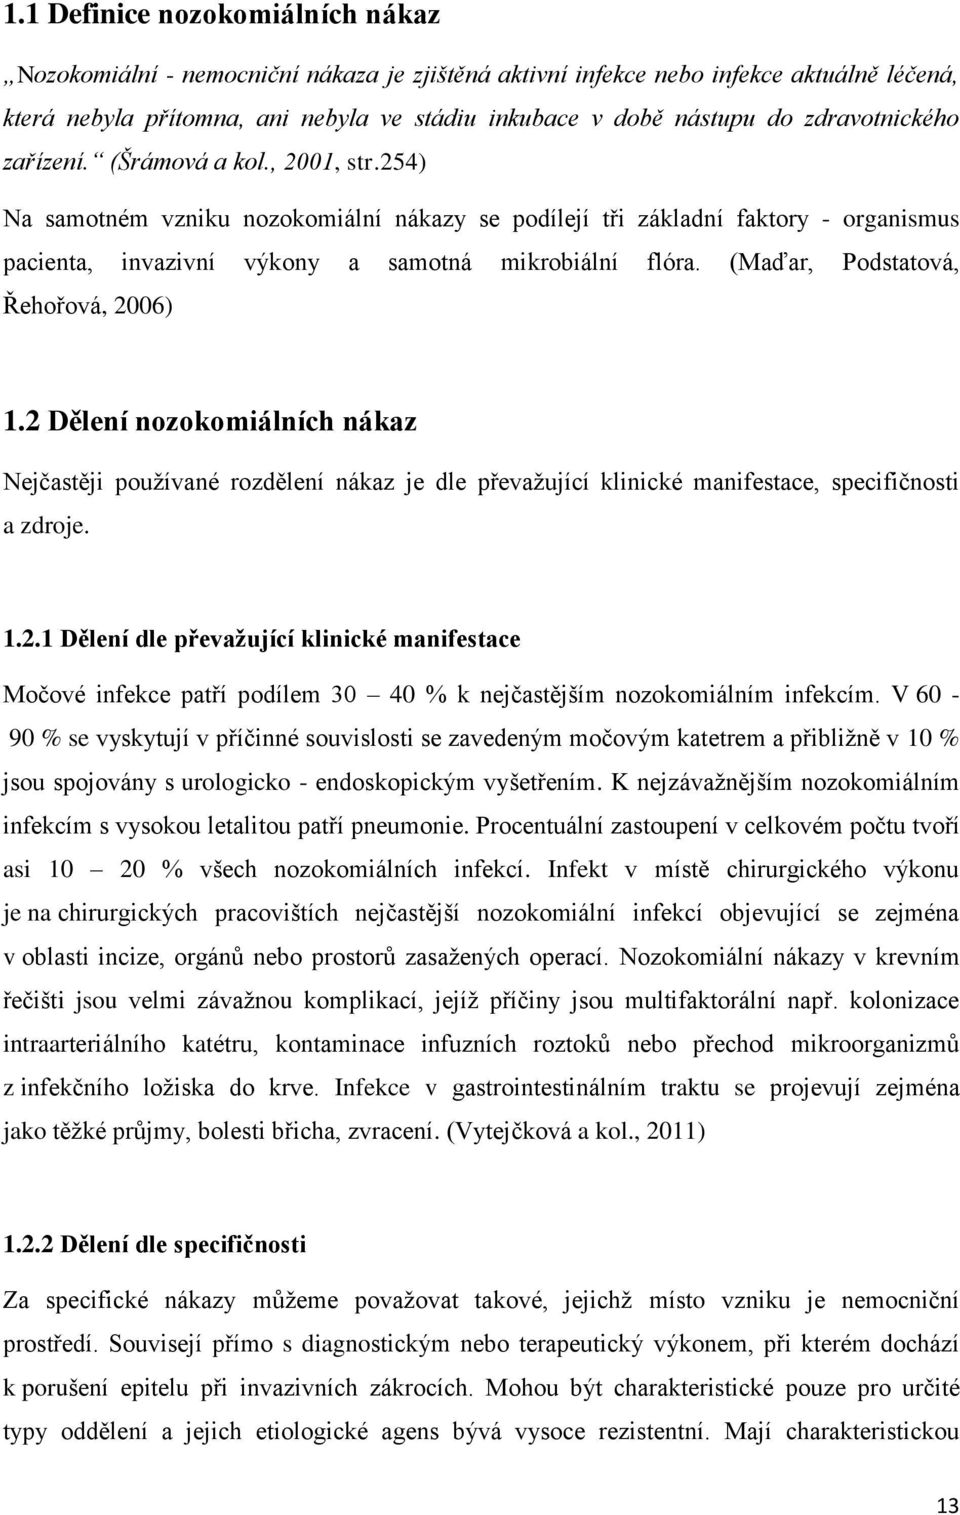 (Maďar, Podstatová, Řehořová, 2006) 1.2 Dělení nozokomiálních nákaz Nejčastěji používané rozdělení nákaz je dle převažující klinické manifestace, specifičnosti a zdroje. 1.2.1 Dělení dle převažující klinické manifestace Močové infekce patří podílem 30 40 % k nejčastějším nozokomiálním infekcím.